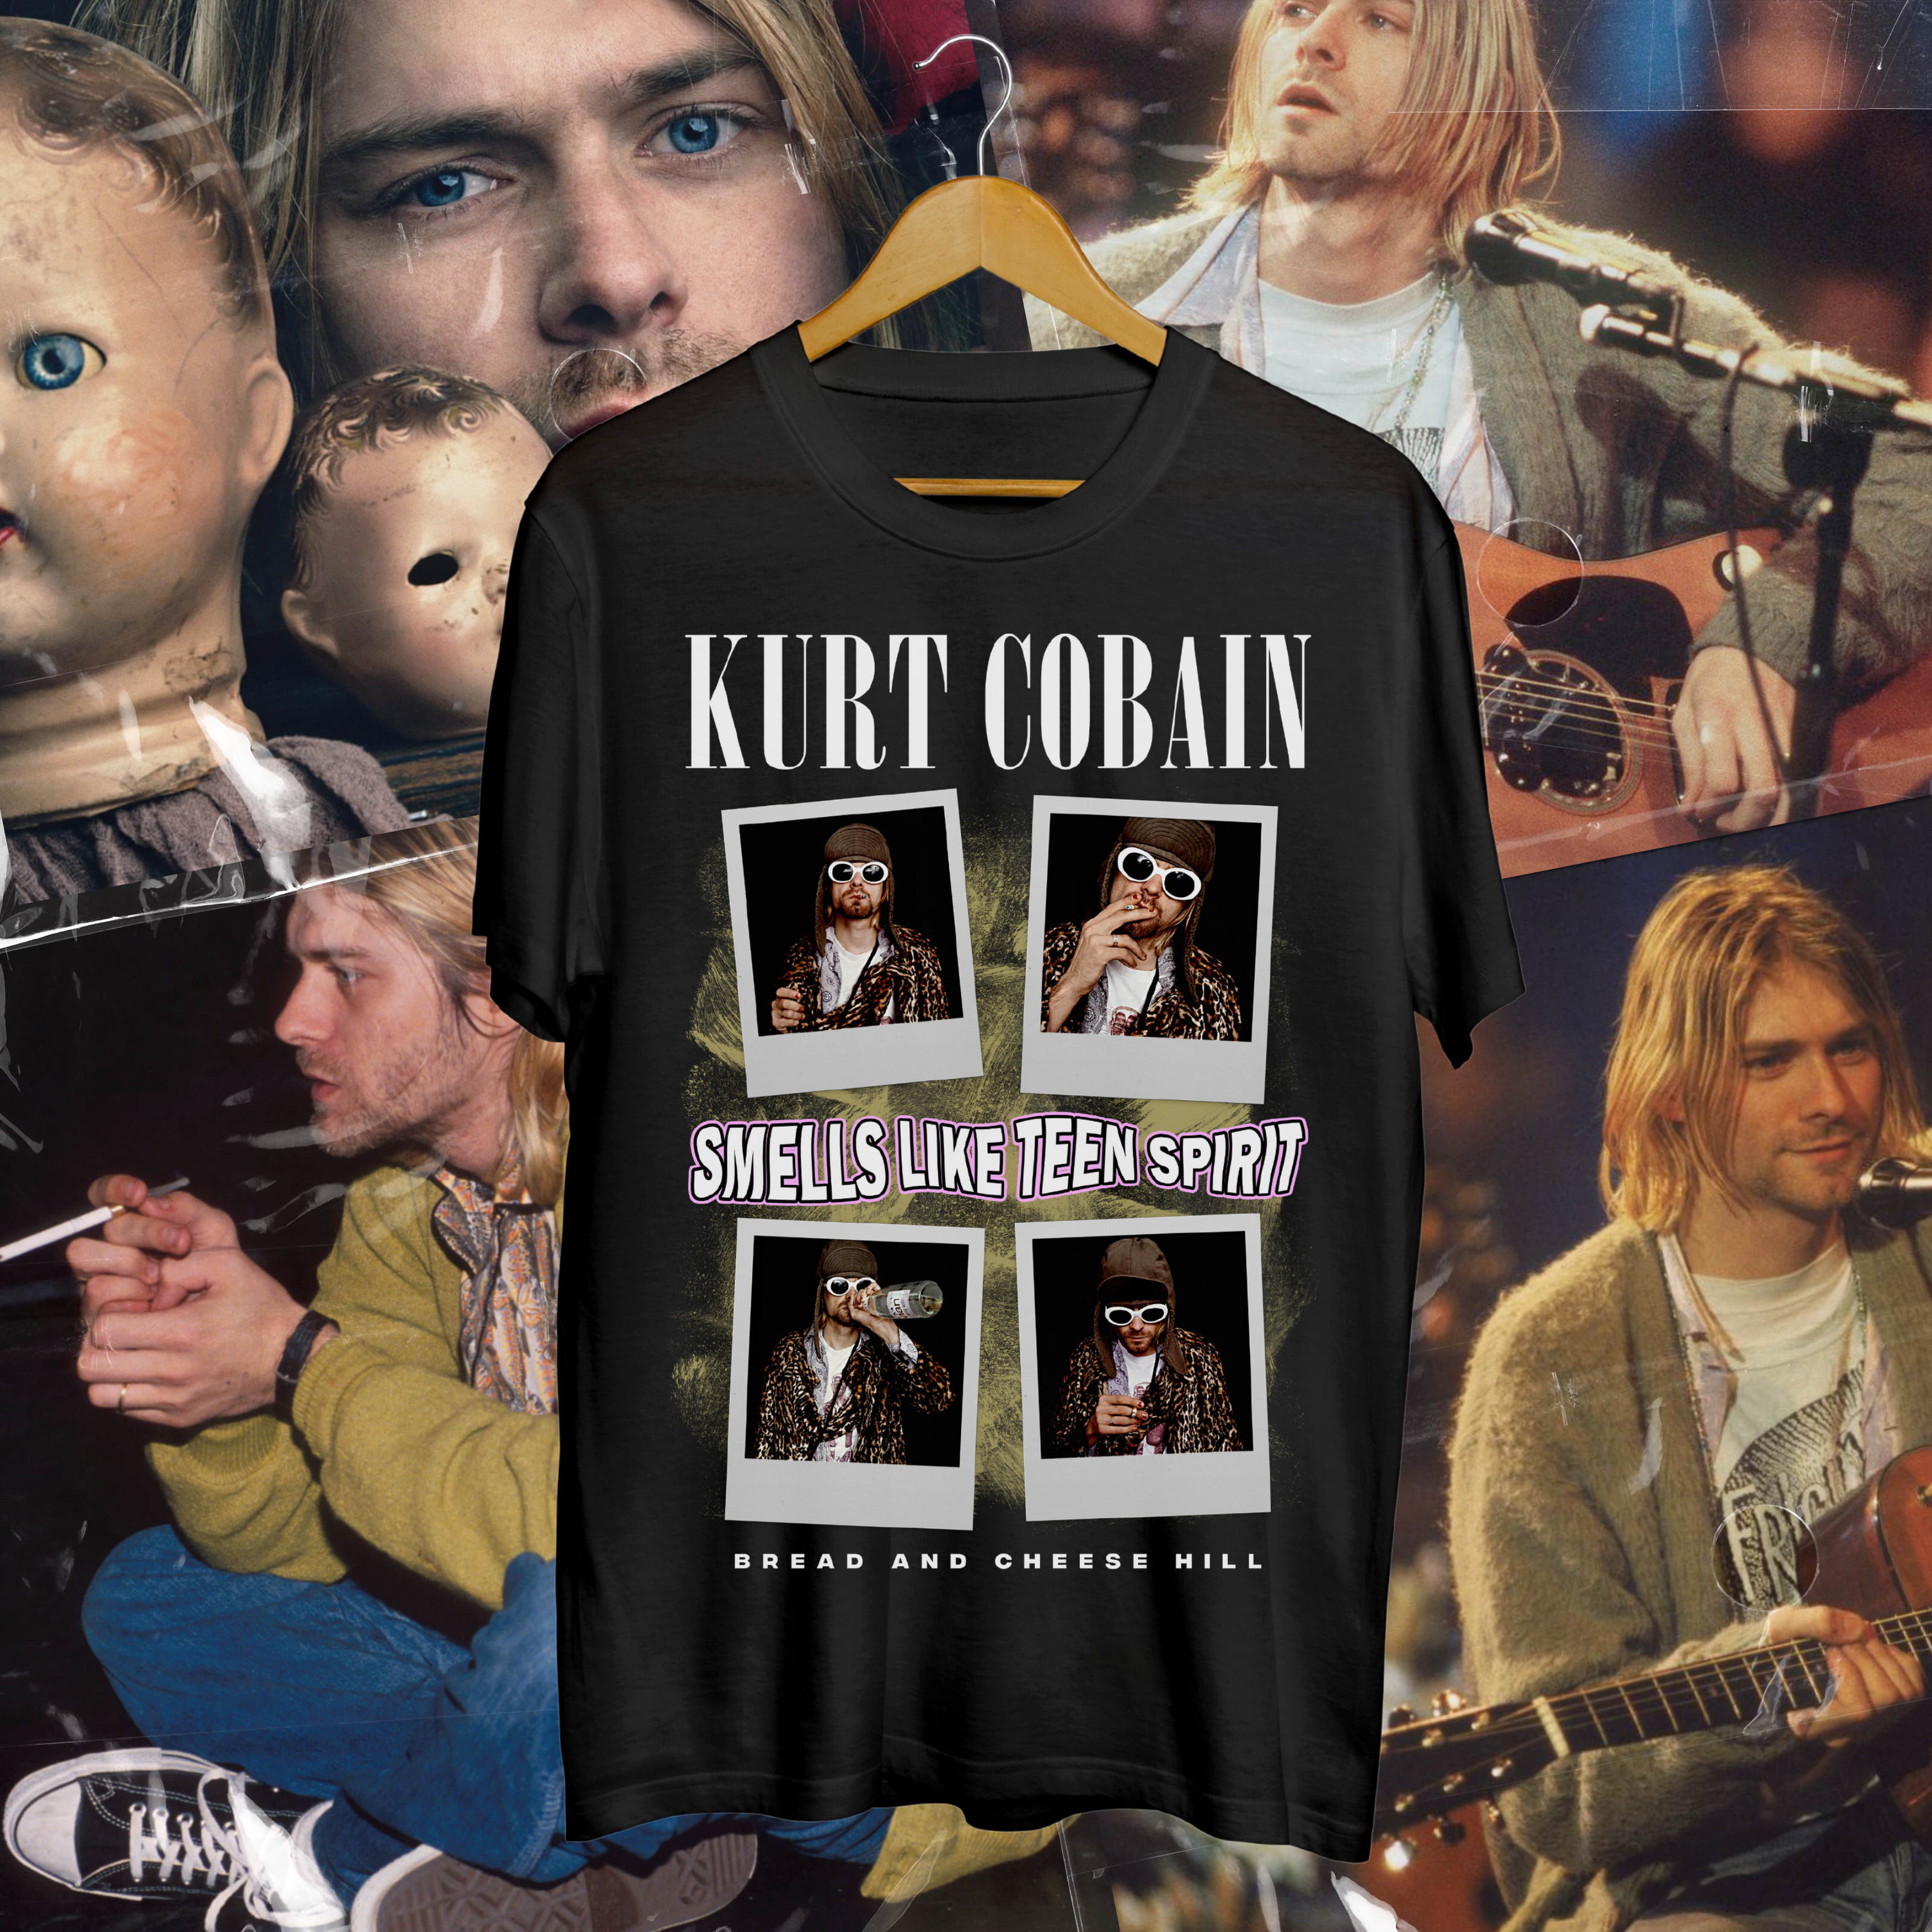 Kurt Cobain - BACH T-ShirtBread And Cheese Hill